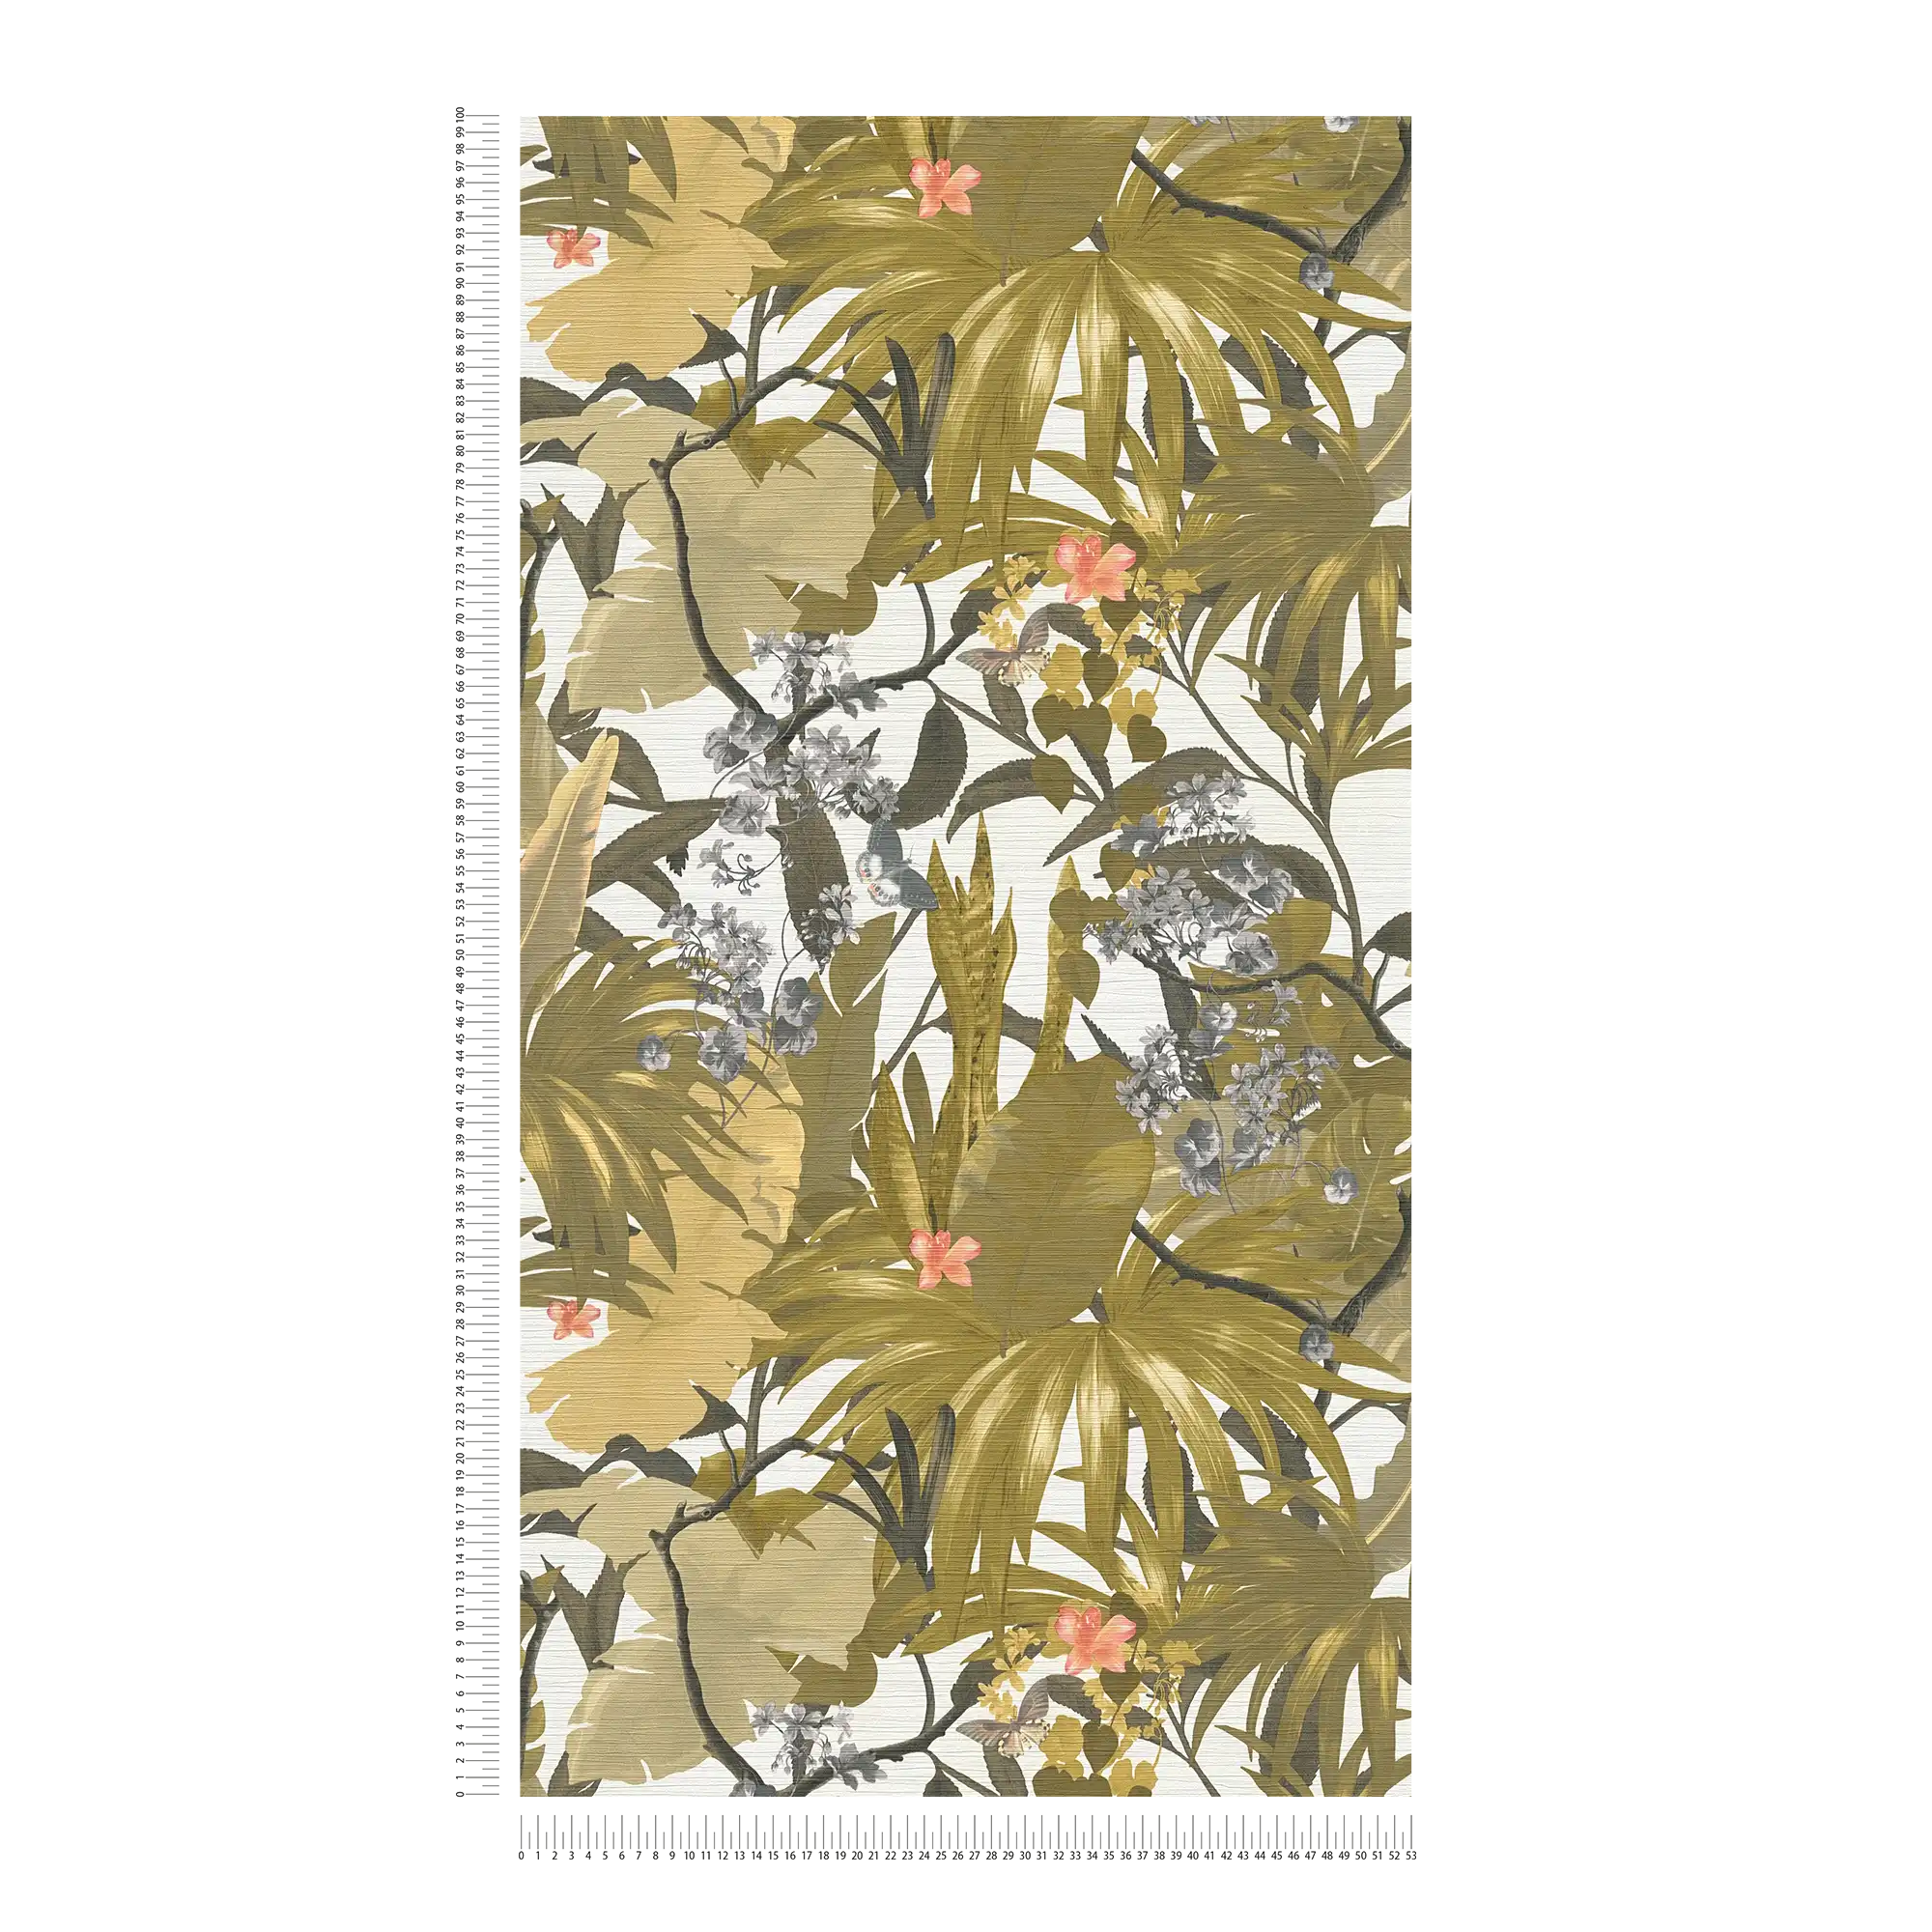             Tapete Dschungel Design mit Blättermuster – Gelb, Grau
        